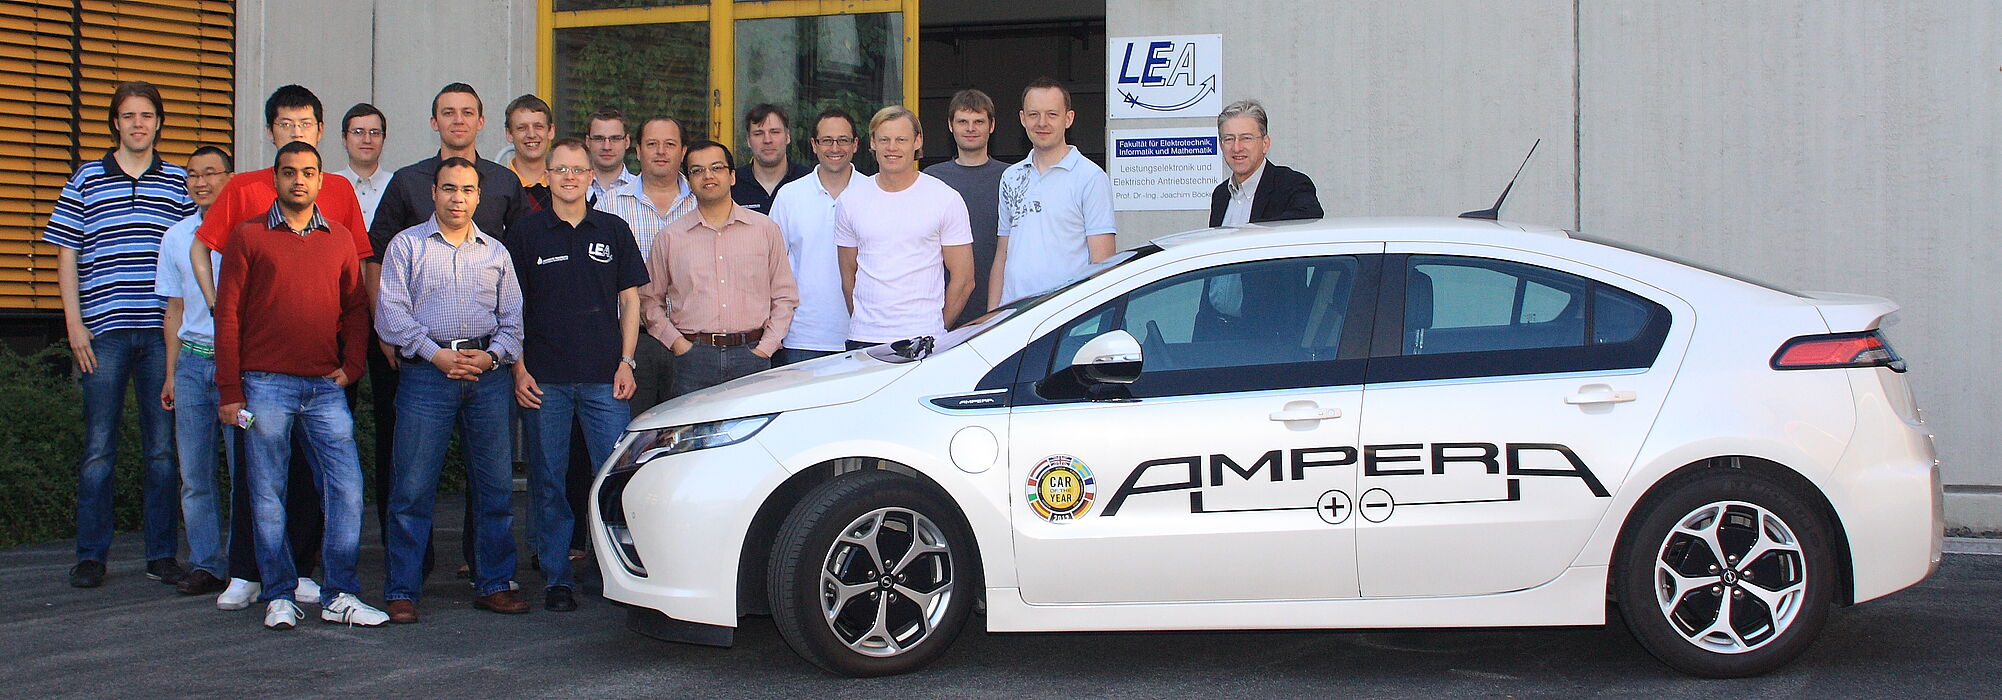 Foto (Universität Paderborn): Das Team des Fachgebiets Leistungselektronik und Elektrische Antriebstechnik (LEA) um Prof. Dr.-Ing. Joachim Böcker (r.) arbeitet an der Zukunft der Mobilität und testet derzeit den Opel Ampera.